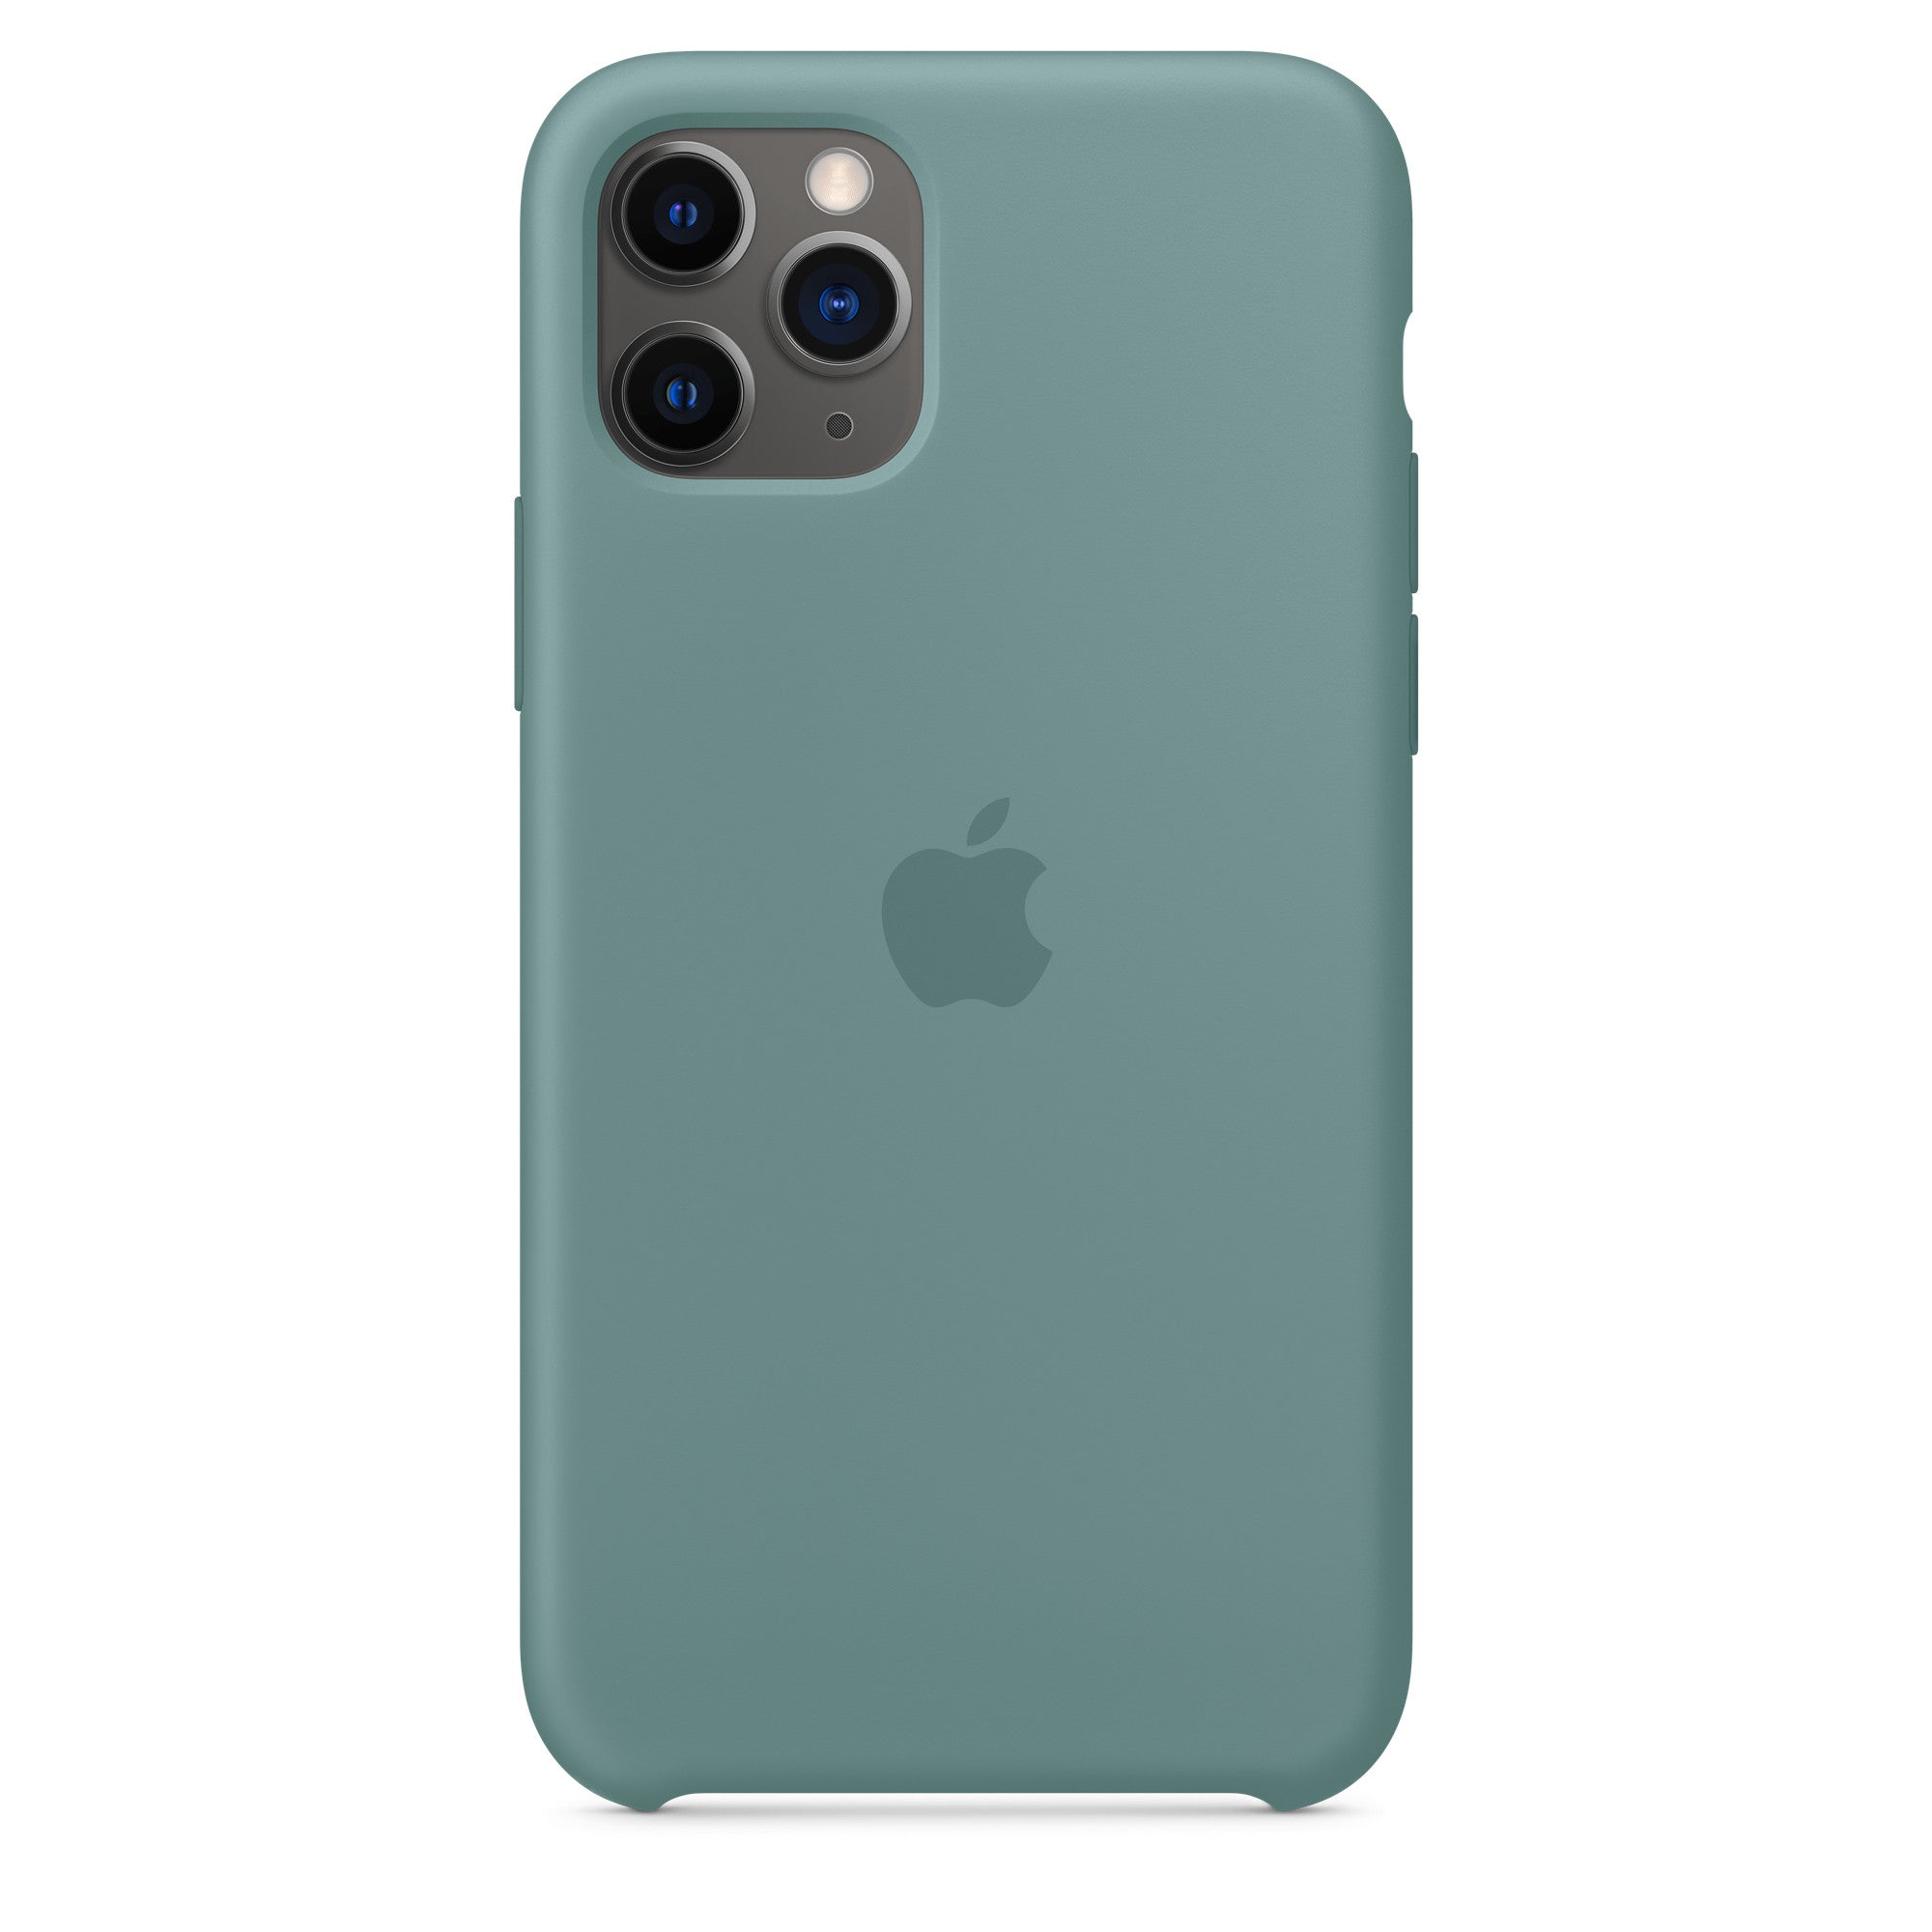 Apple iPhone 11 Pro Silicone Case Cactus Cactus New - Sealed